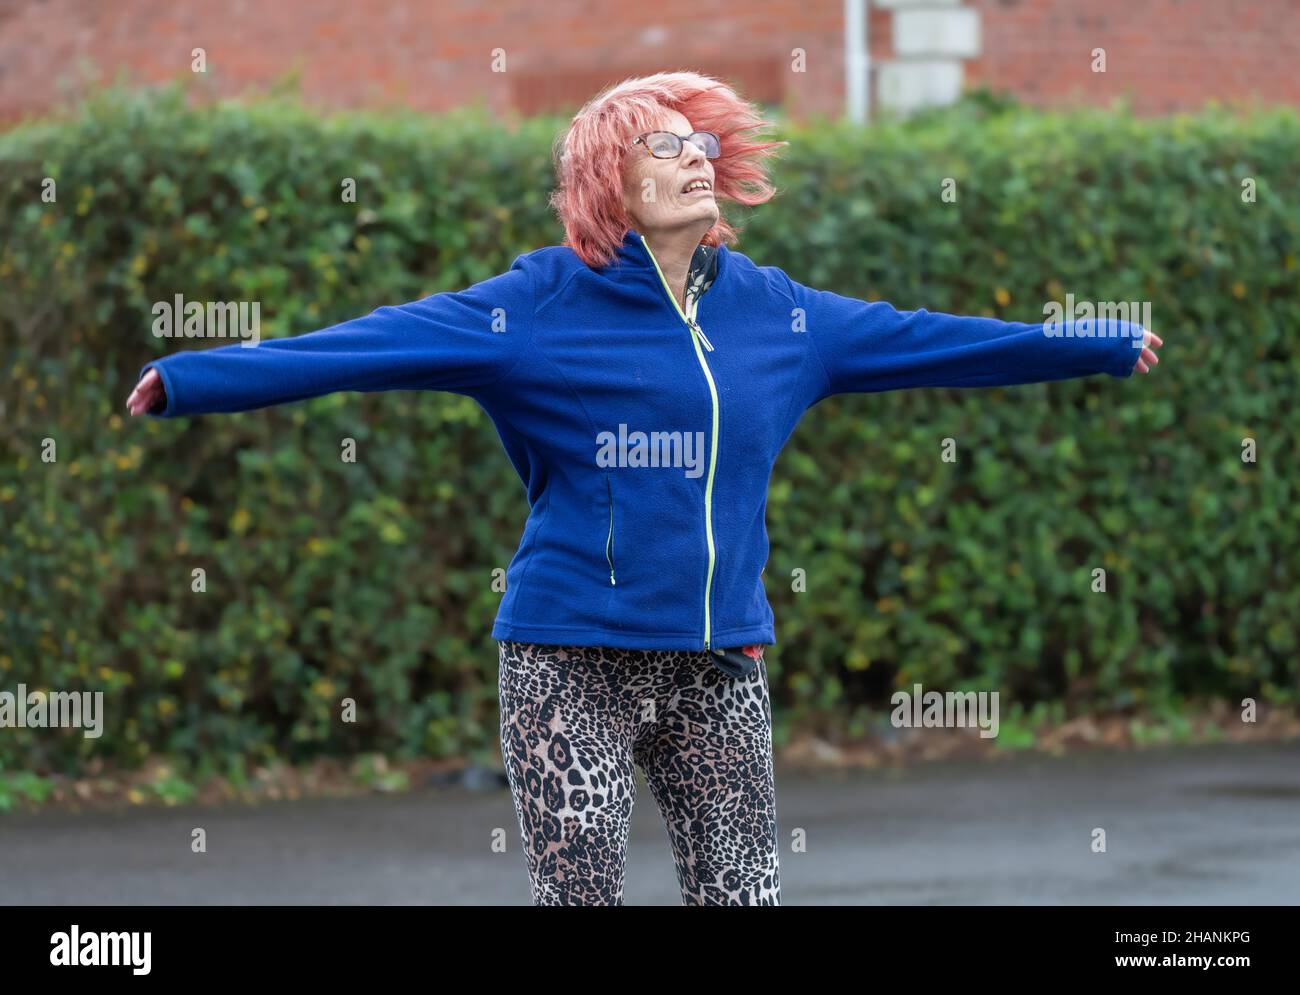 Femme âgée de 80s ans qui fait de l'exercice à l'extérieur en faisant des sauts d'étoiles en hiver.Vieille dame gardant un mode de vie actif et sain. Banque D'Images